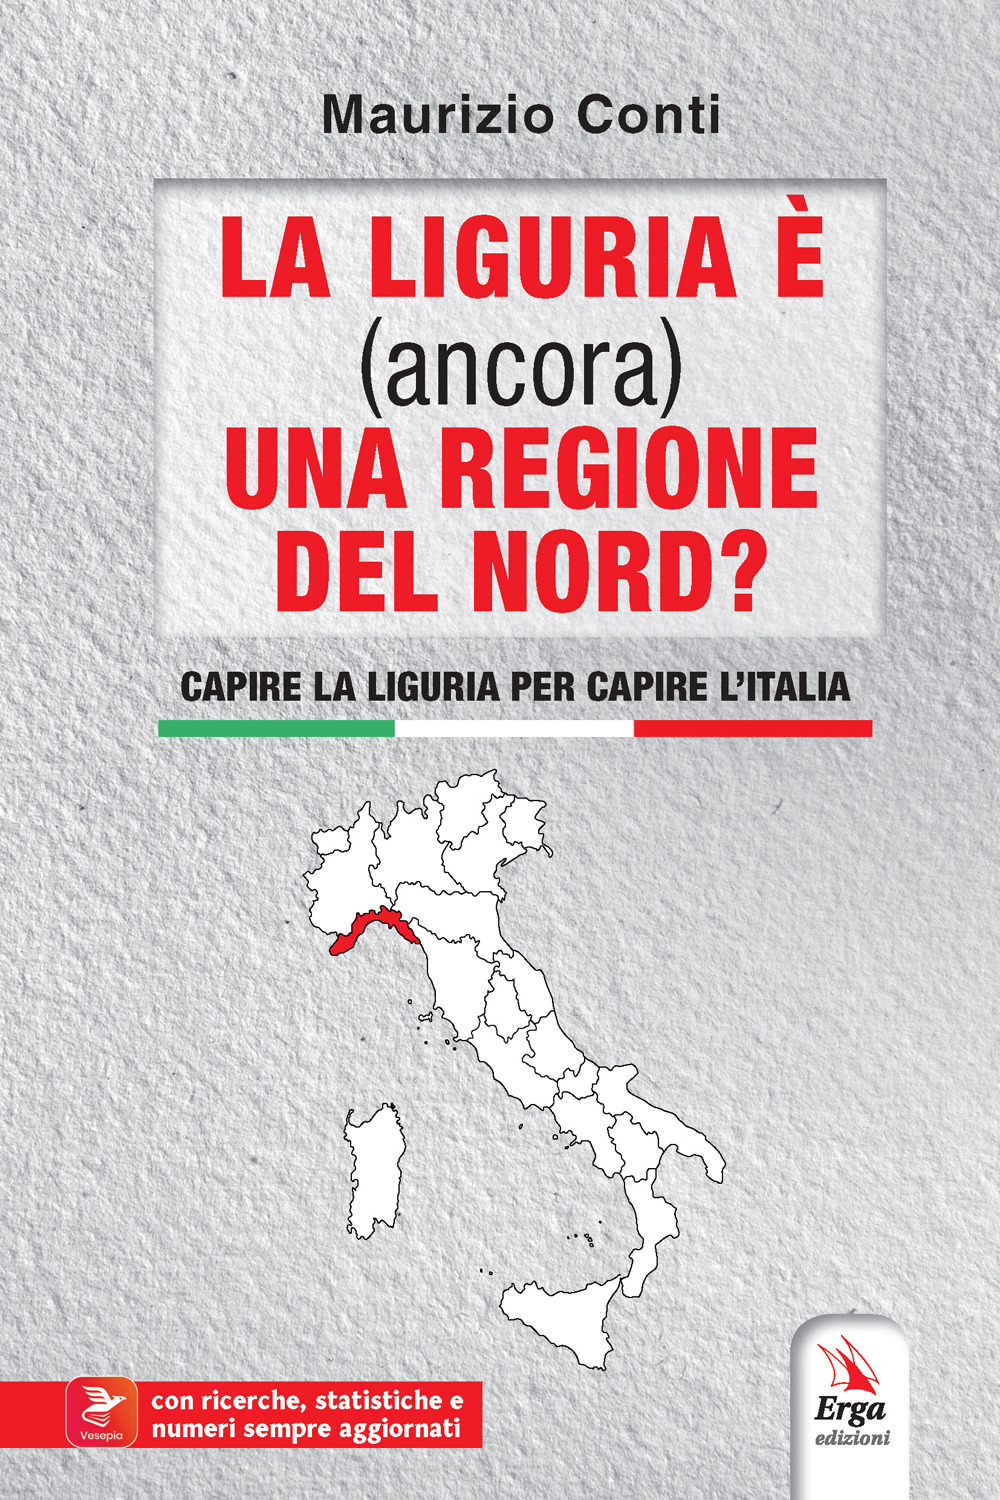 La Liguria è (ancora) una regione del Nord? Capire la Liguria per capire l'Italia. Con contenuti multimediali